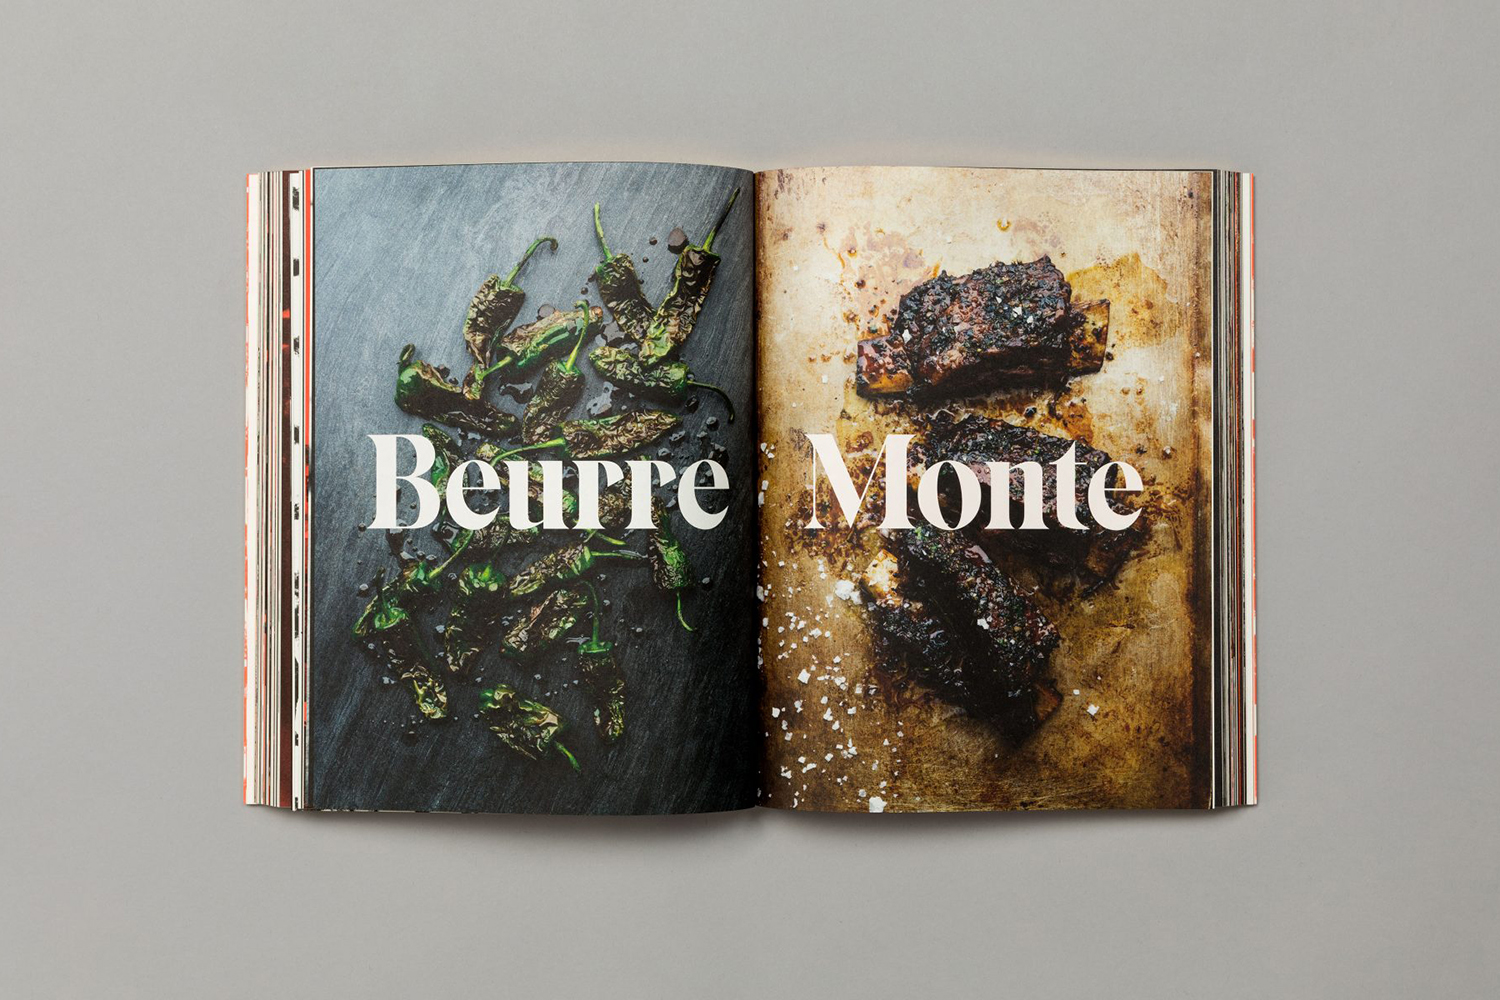 Cookbook designed by Helsinki based Bond for chef and restauranteur Kari Aihinen